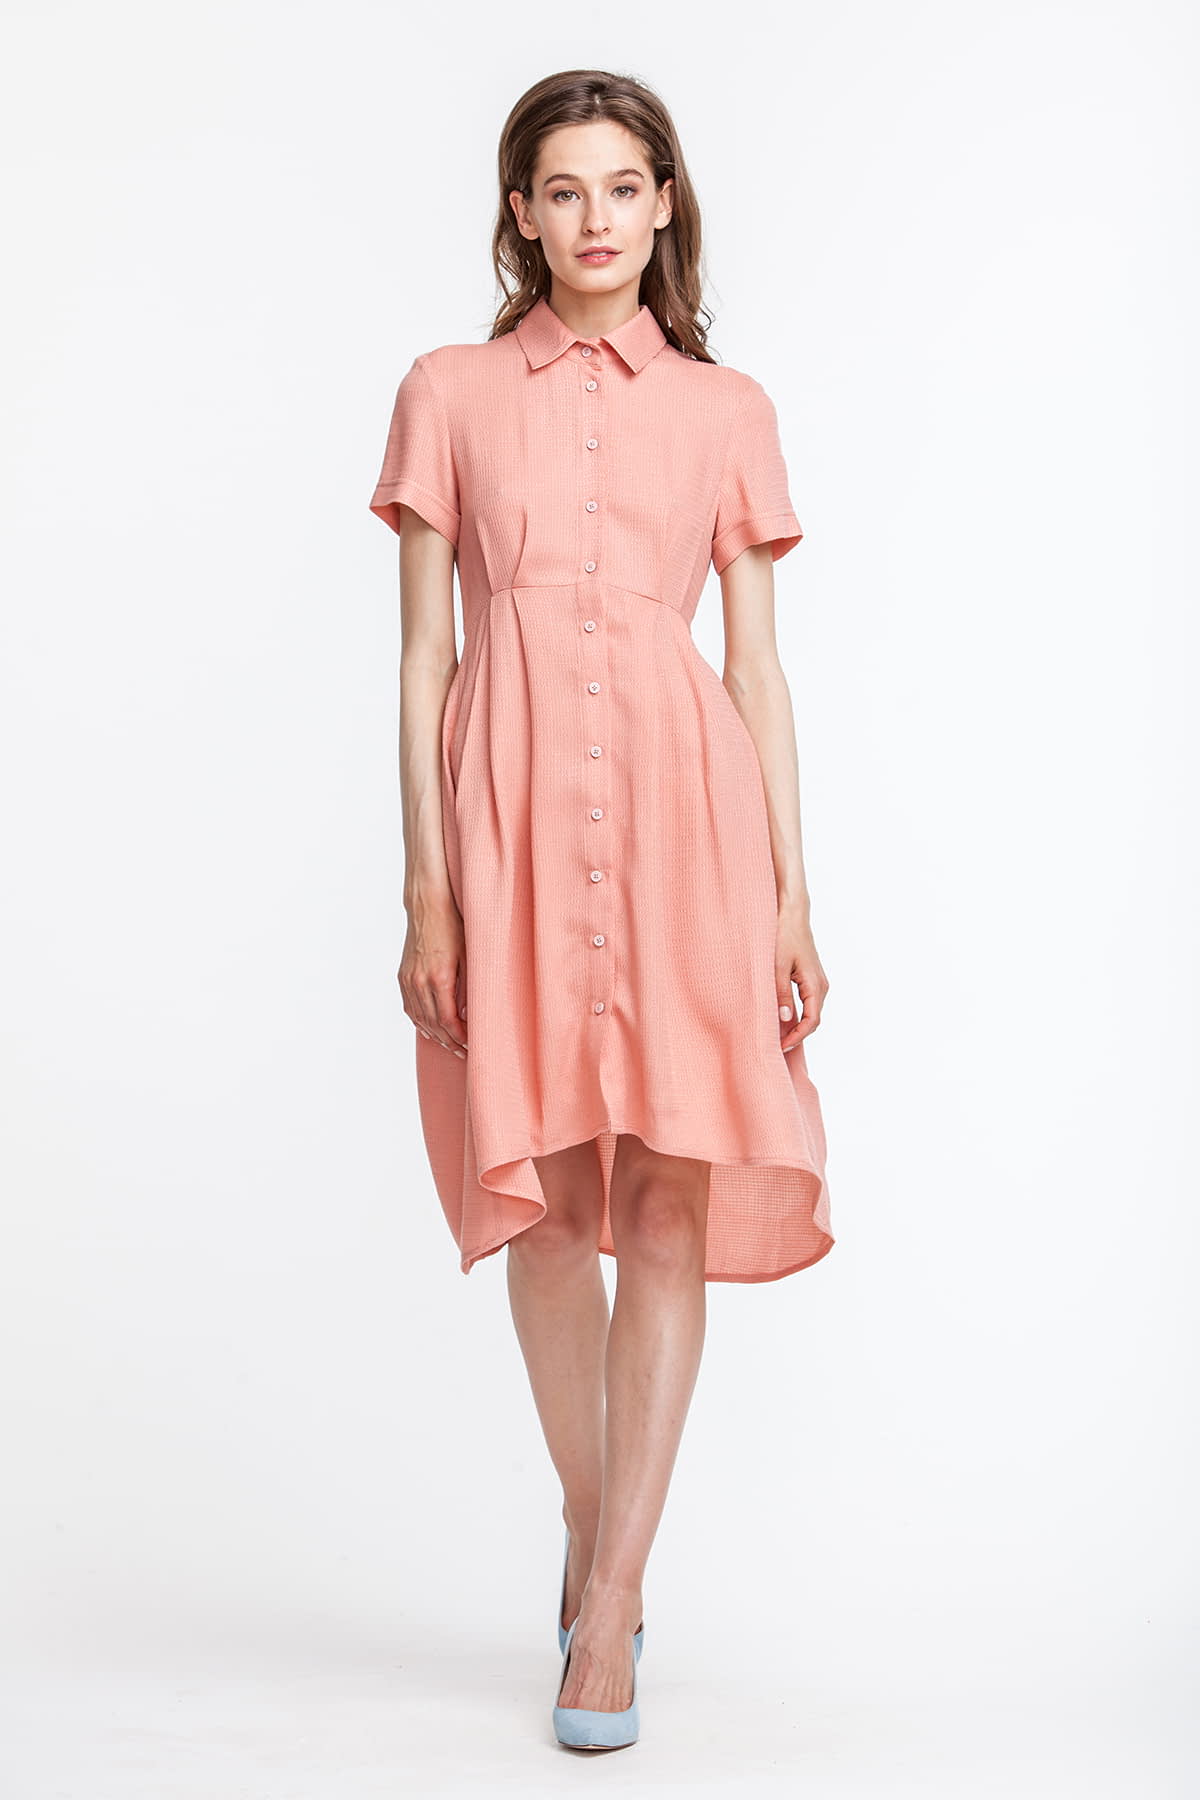 Сукня персикового кольору, з сорочковим верхом, спідниця різної довжини, фото 2